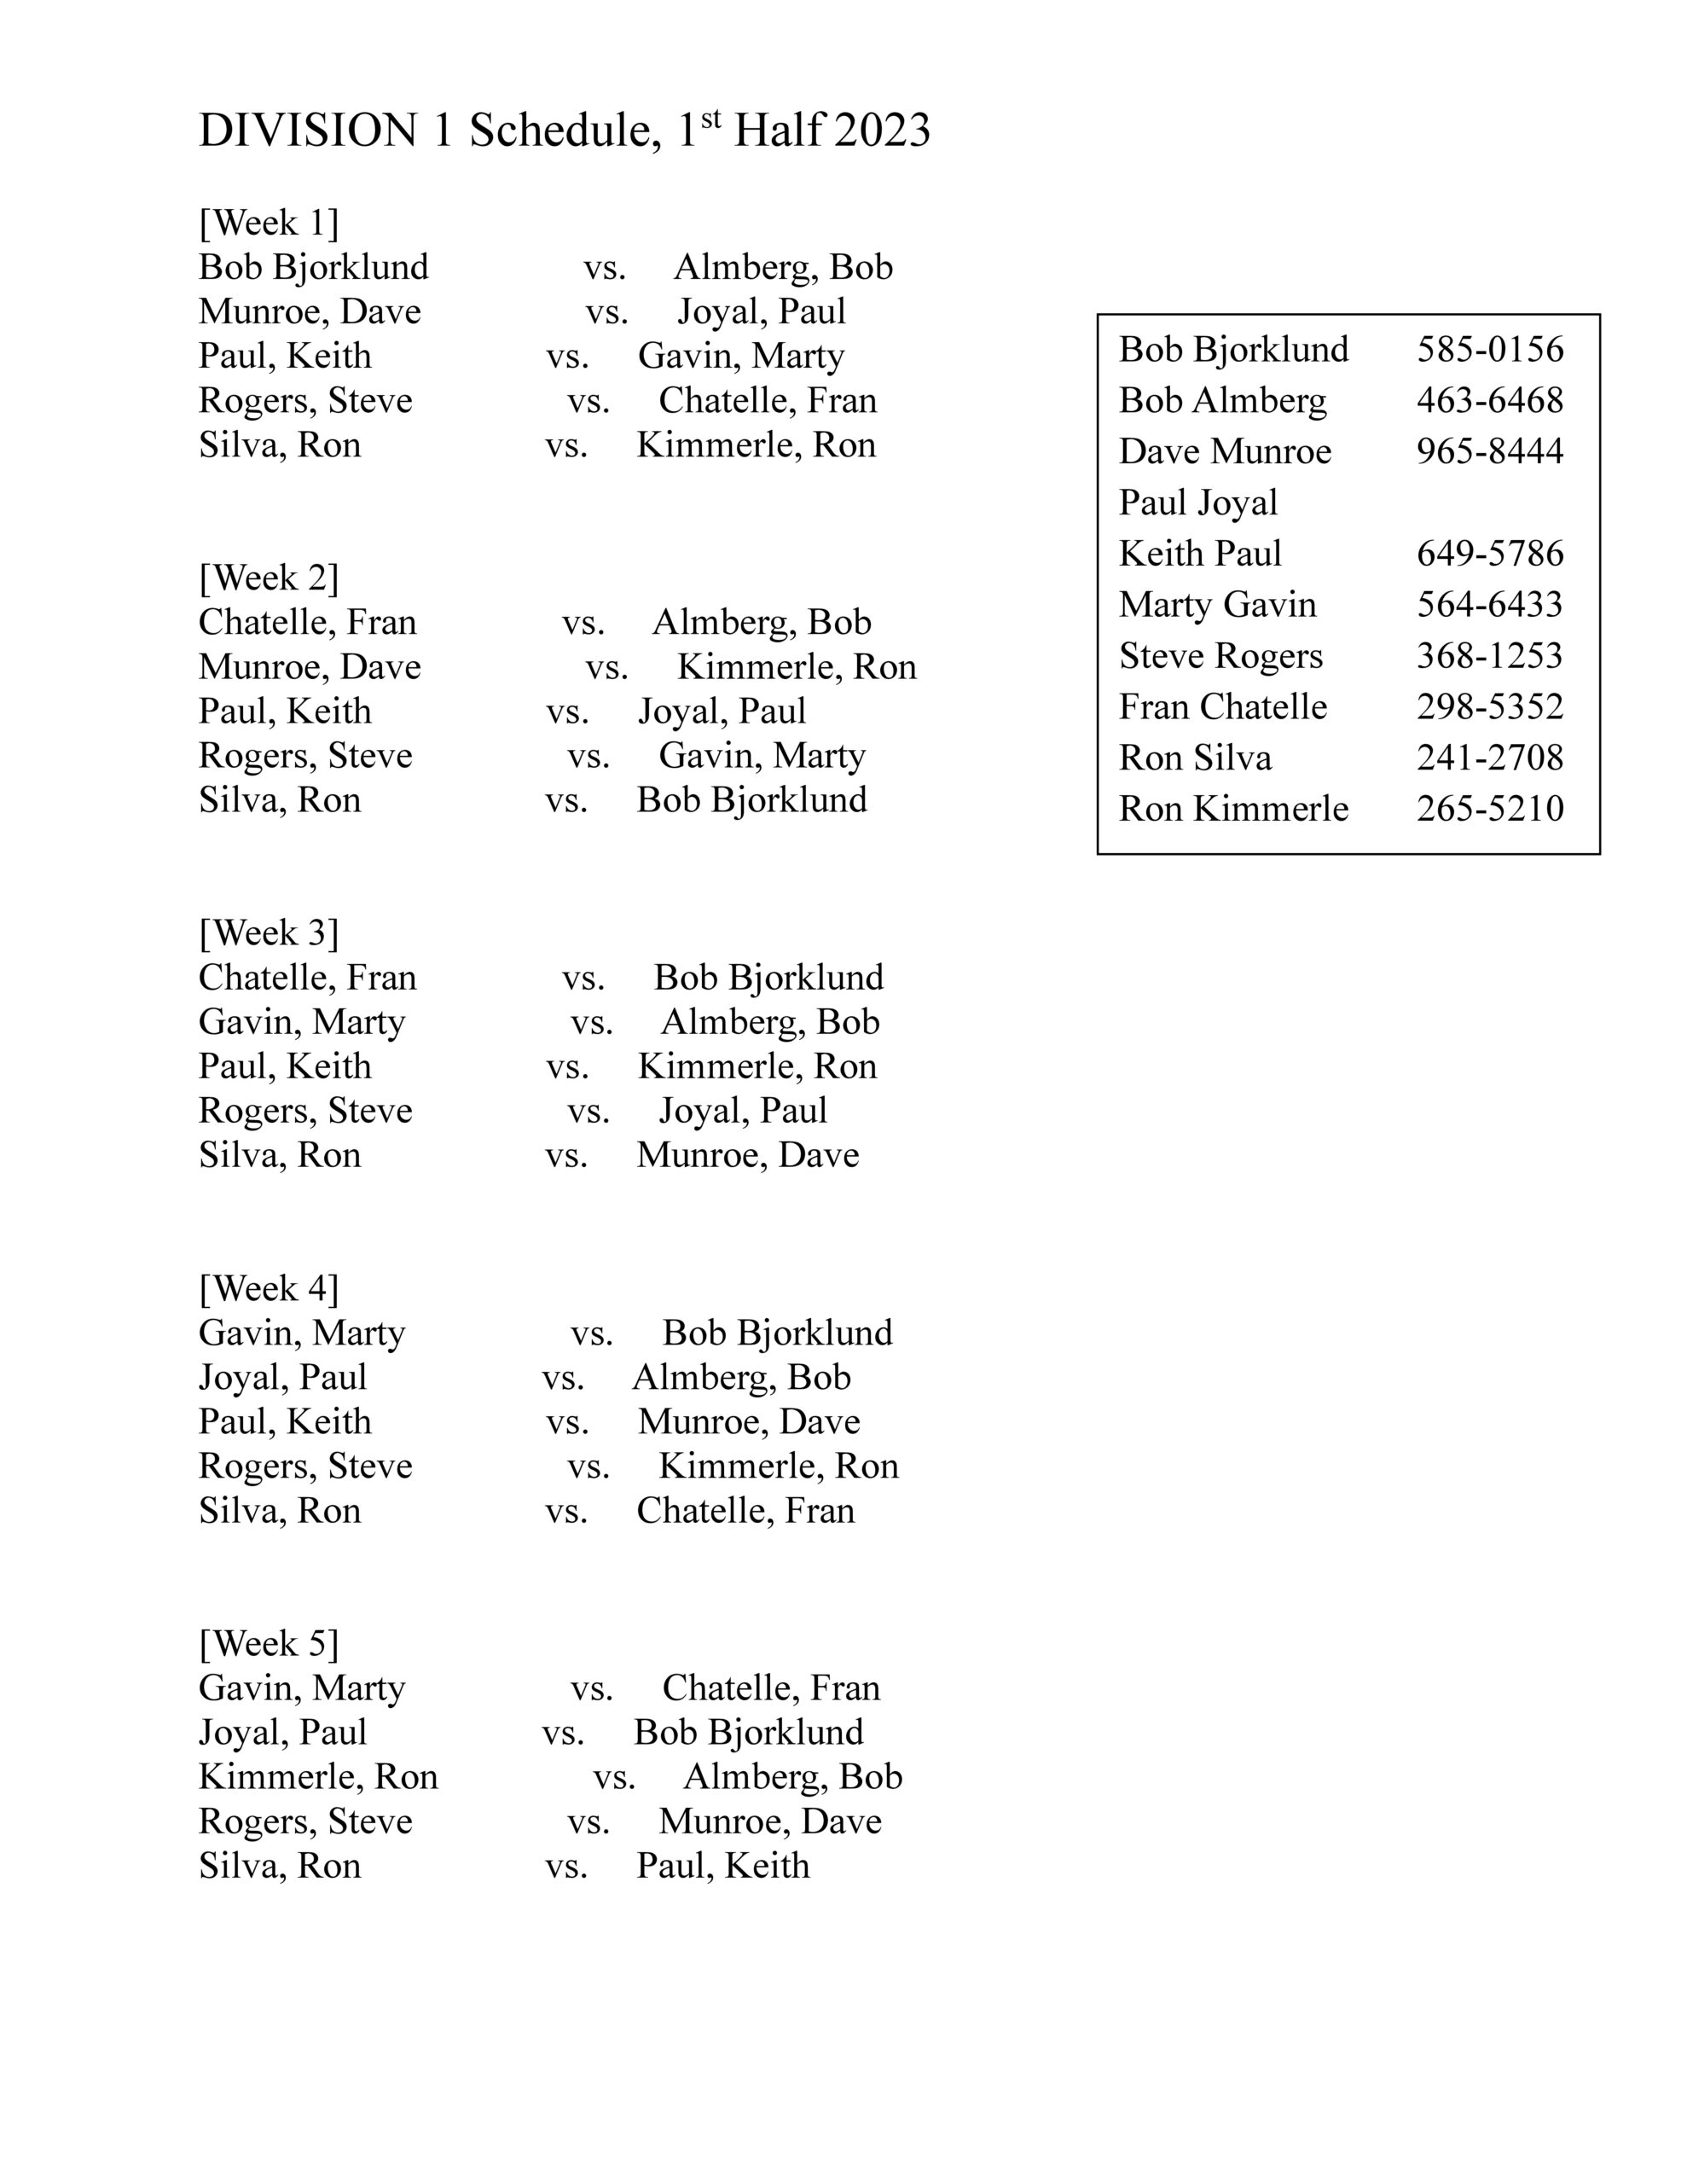 Division 1 Schedule, first half 2023-1